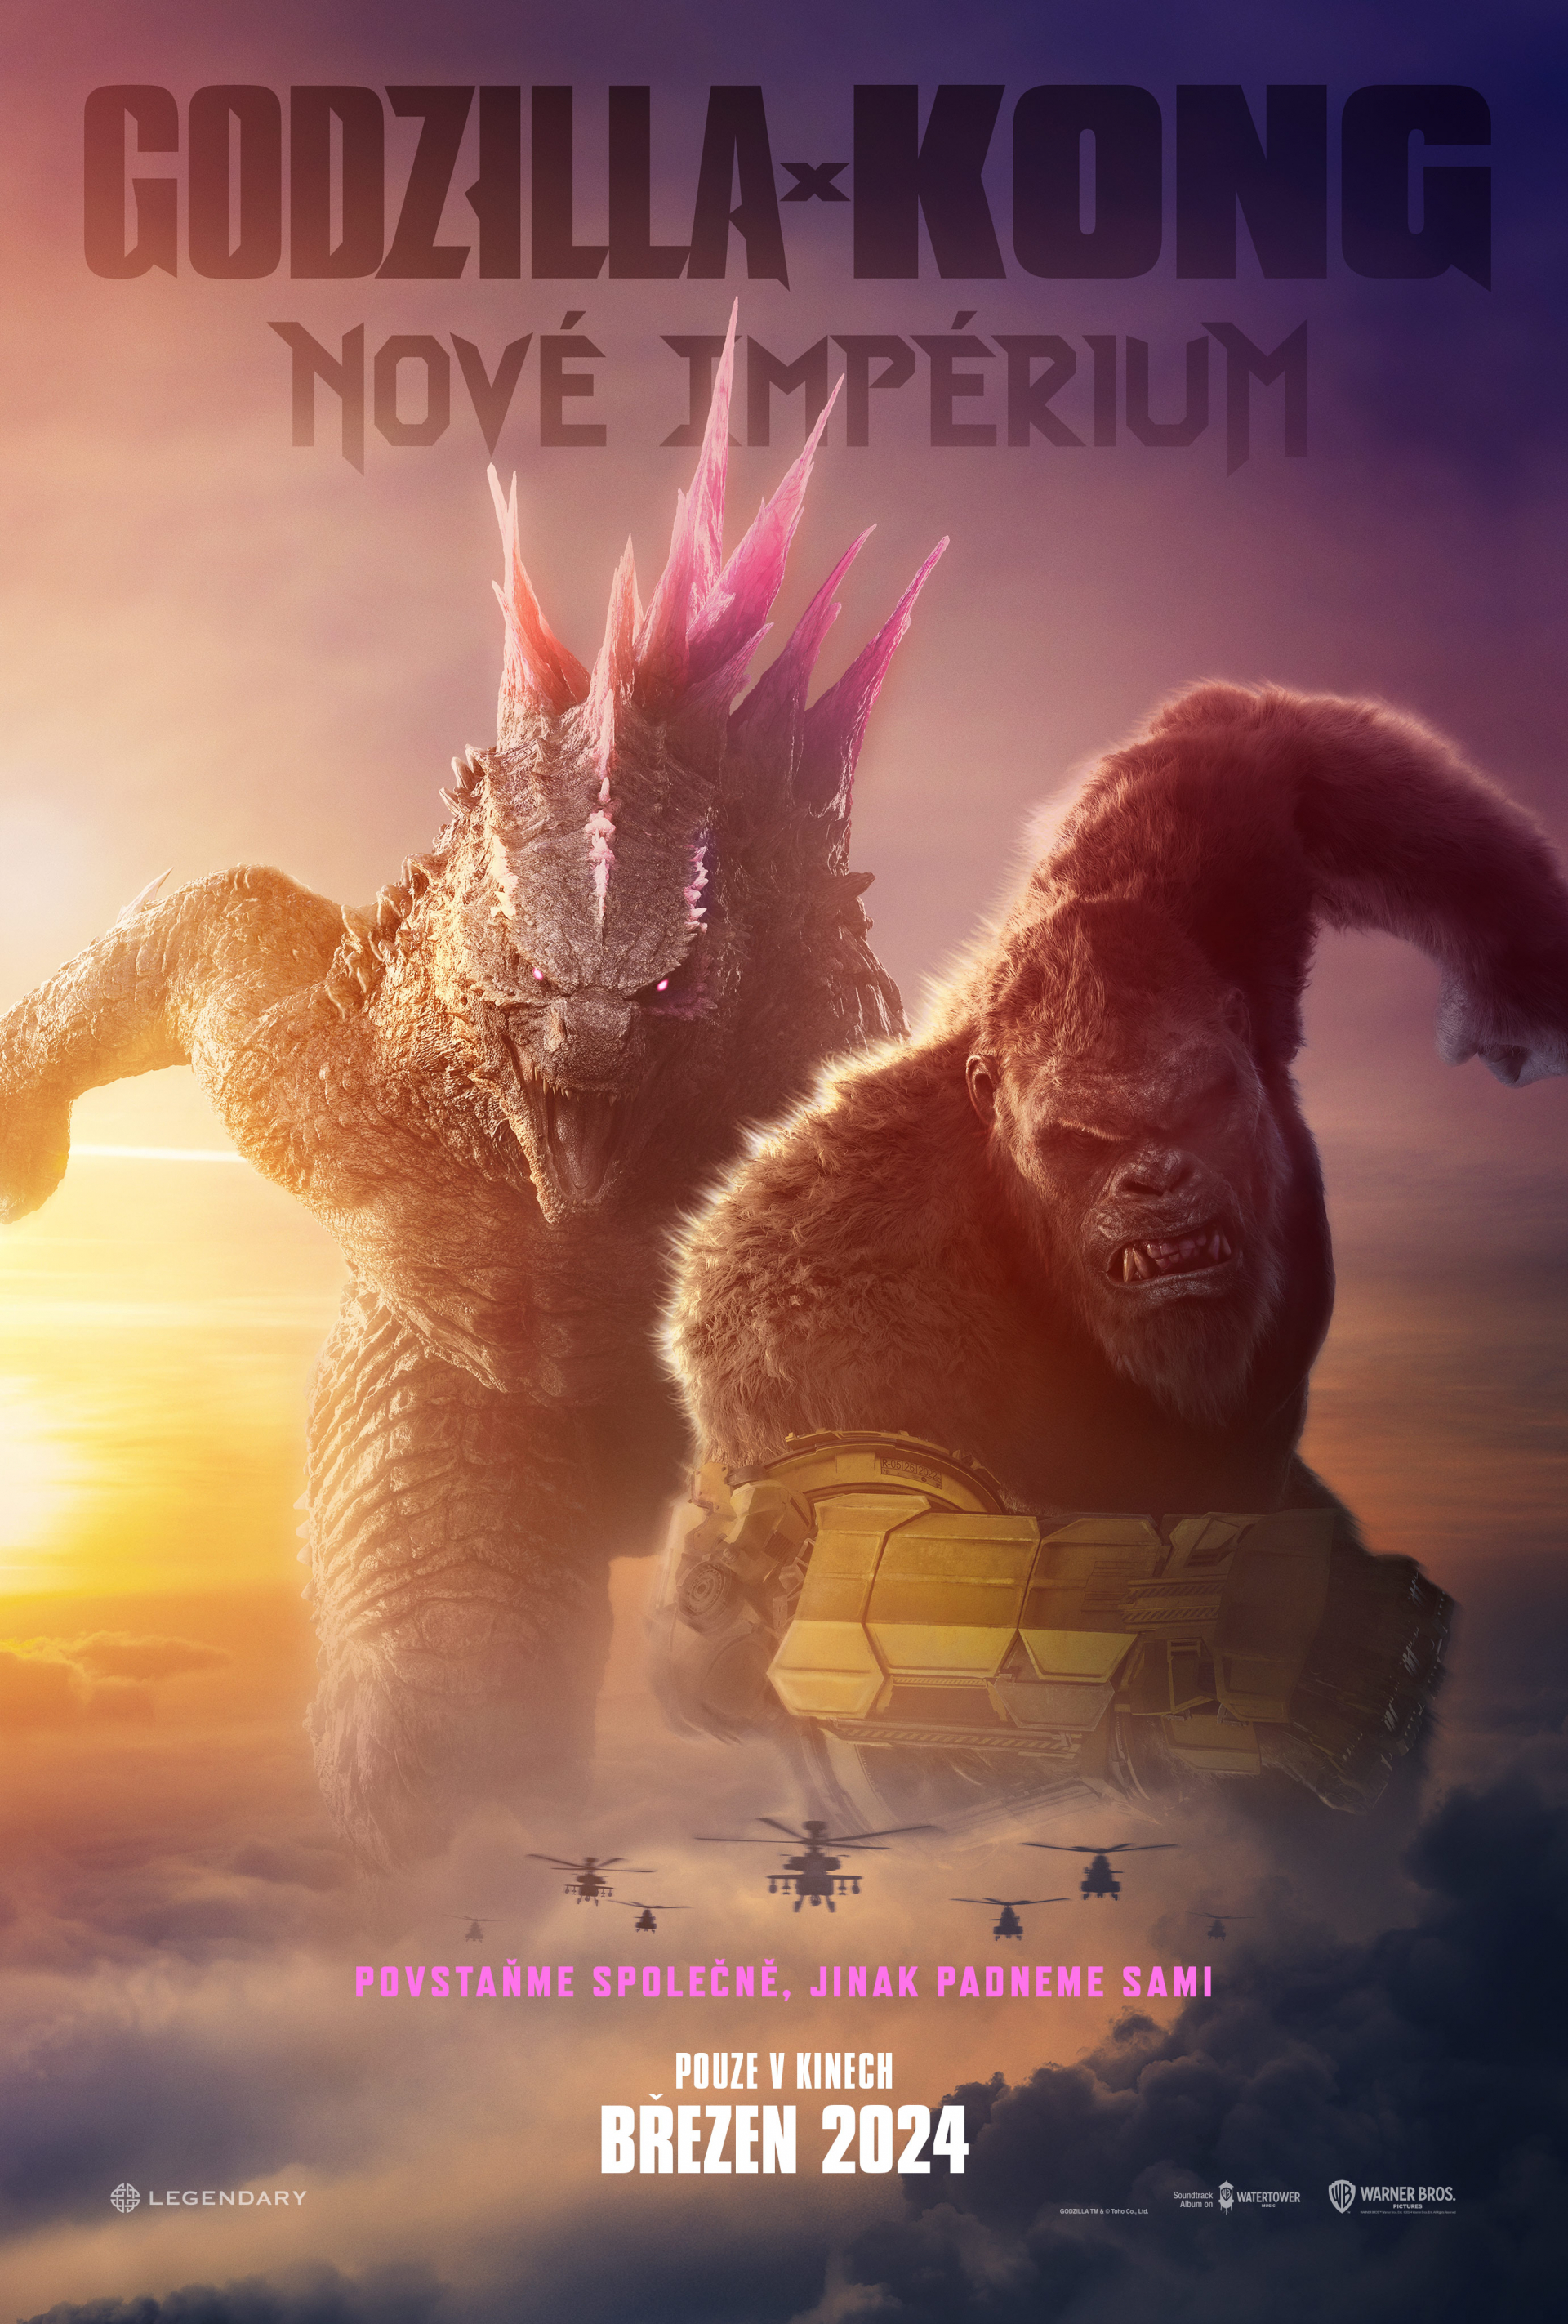 Plakát Godzilla x Kong: Nové impérium